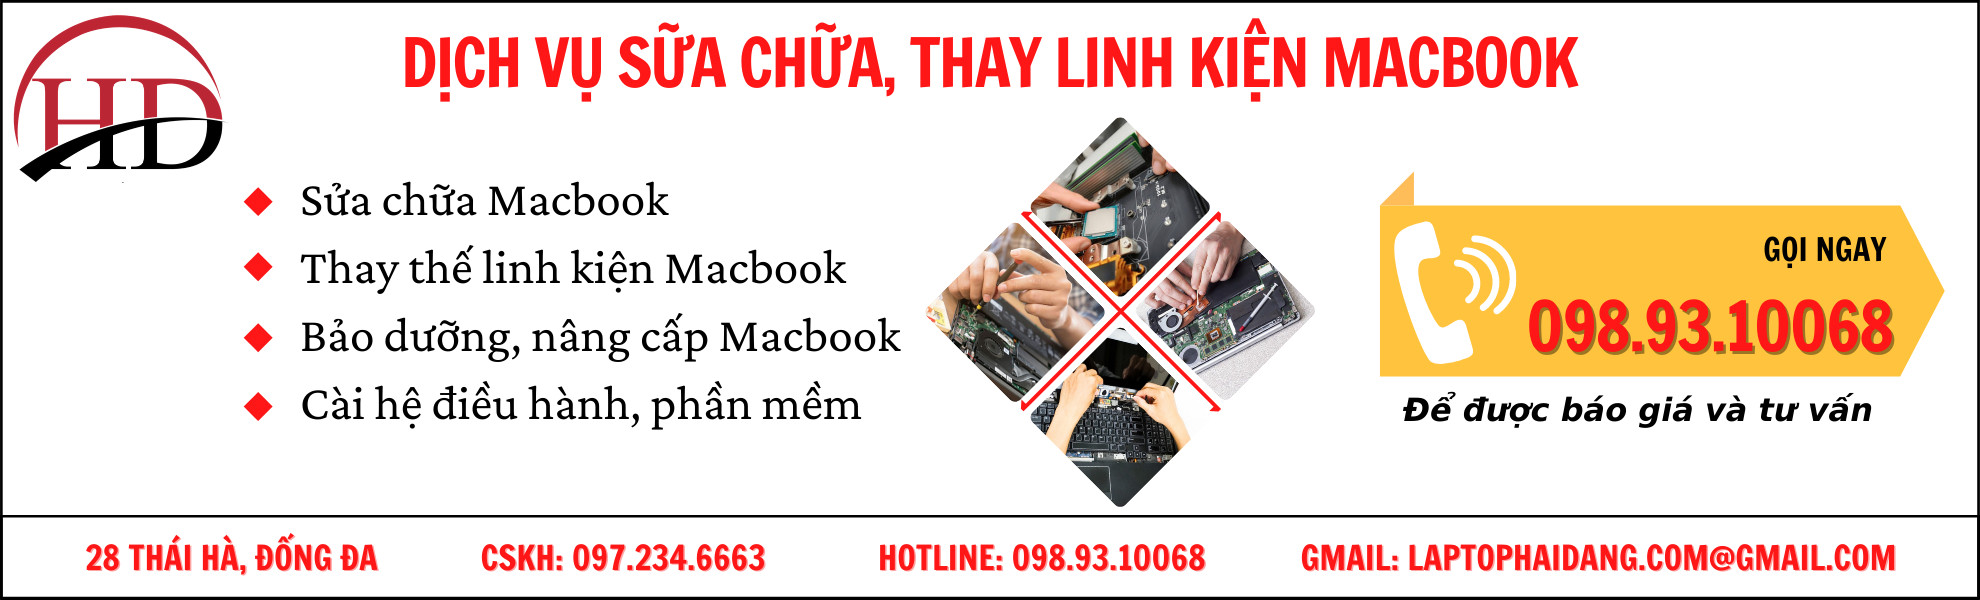 Dịch vụ sửa chữa Macbook Hà Nội